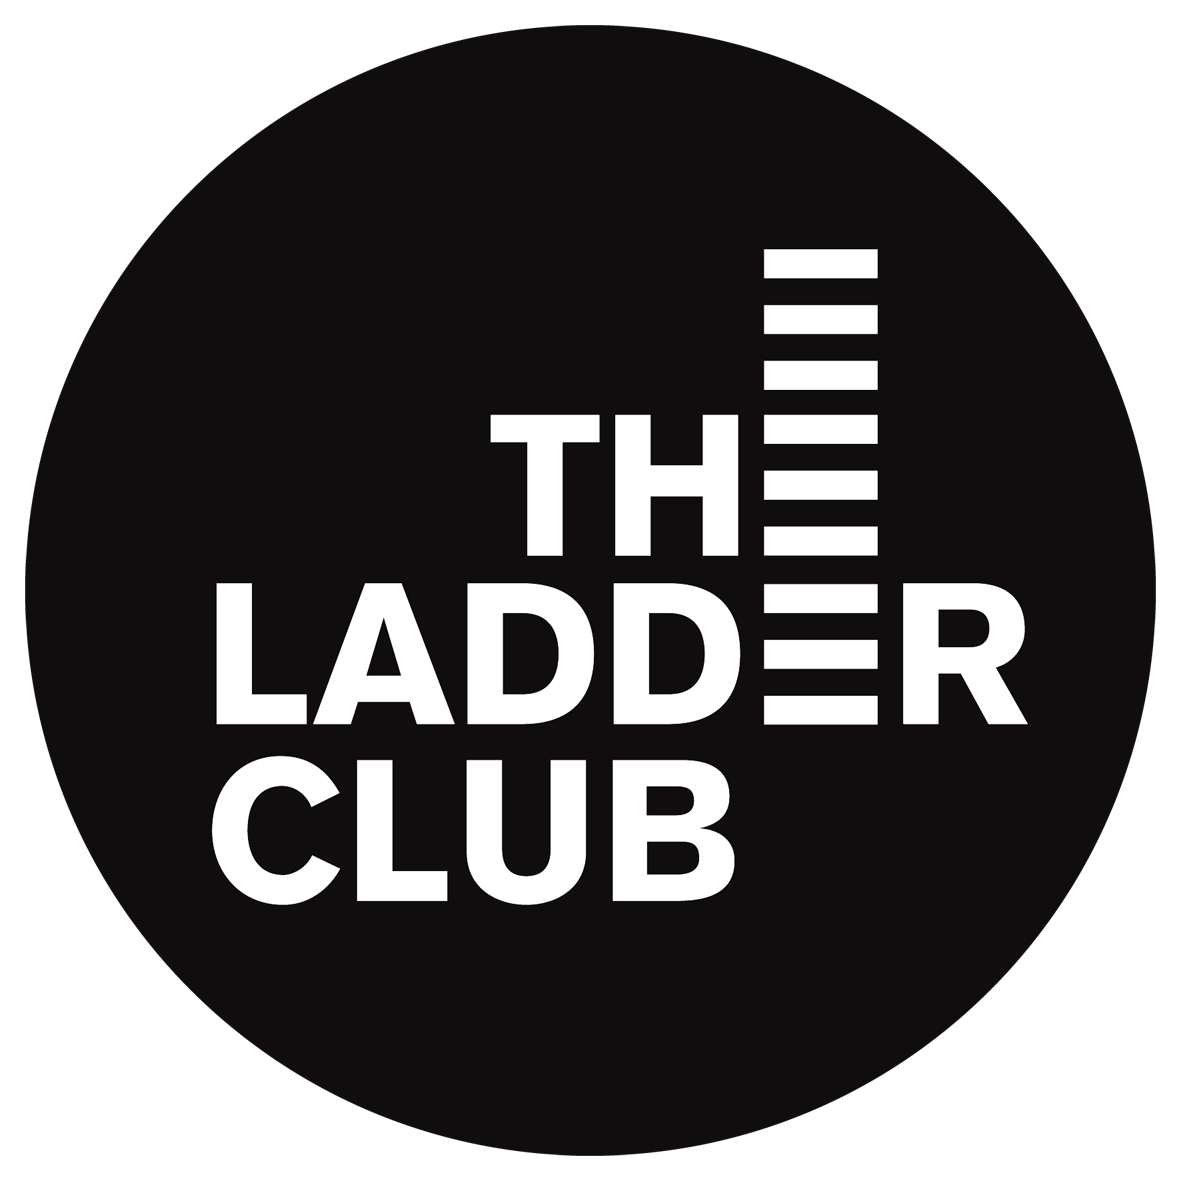 The Ladder Club logo